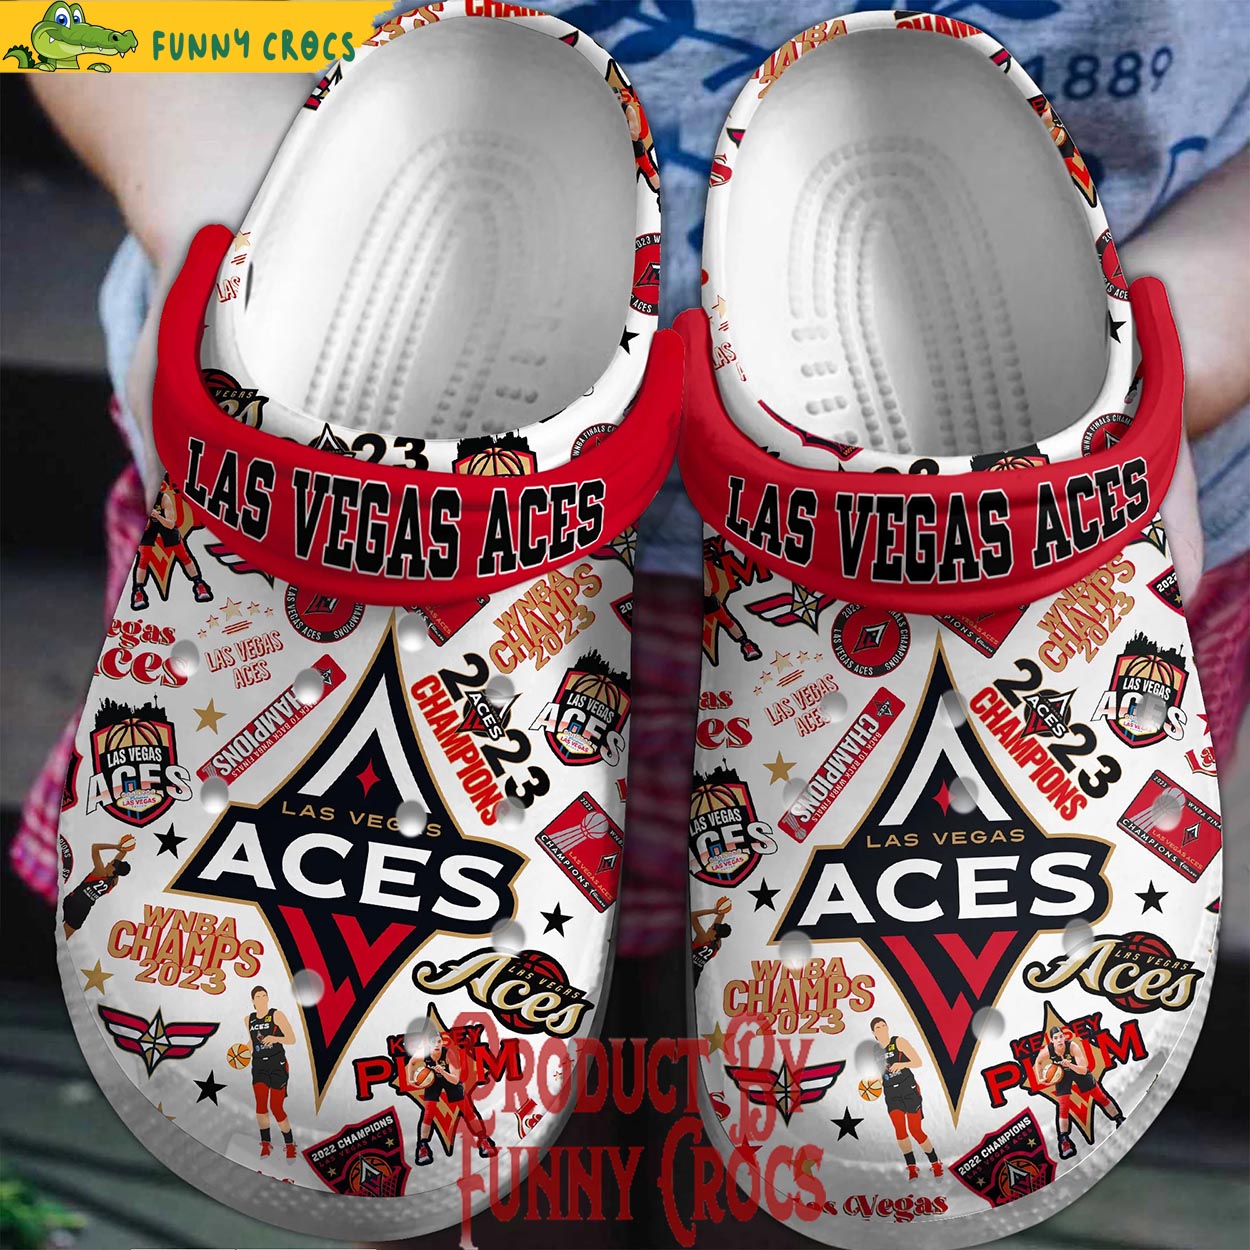 Las Vegas Aces Champion 2023 Crocs Shoes